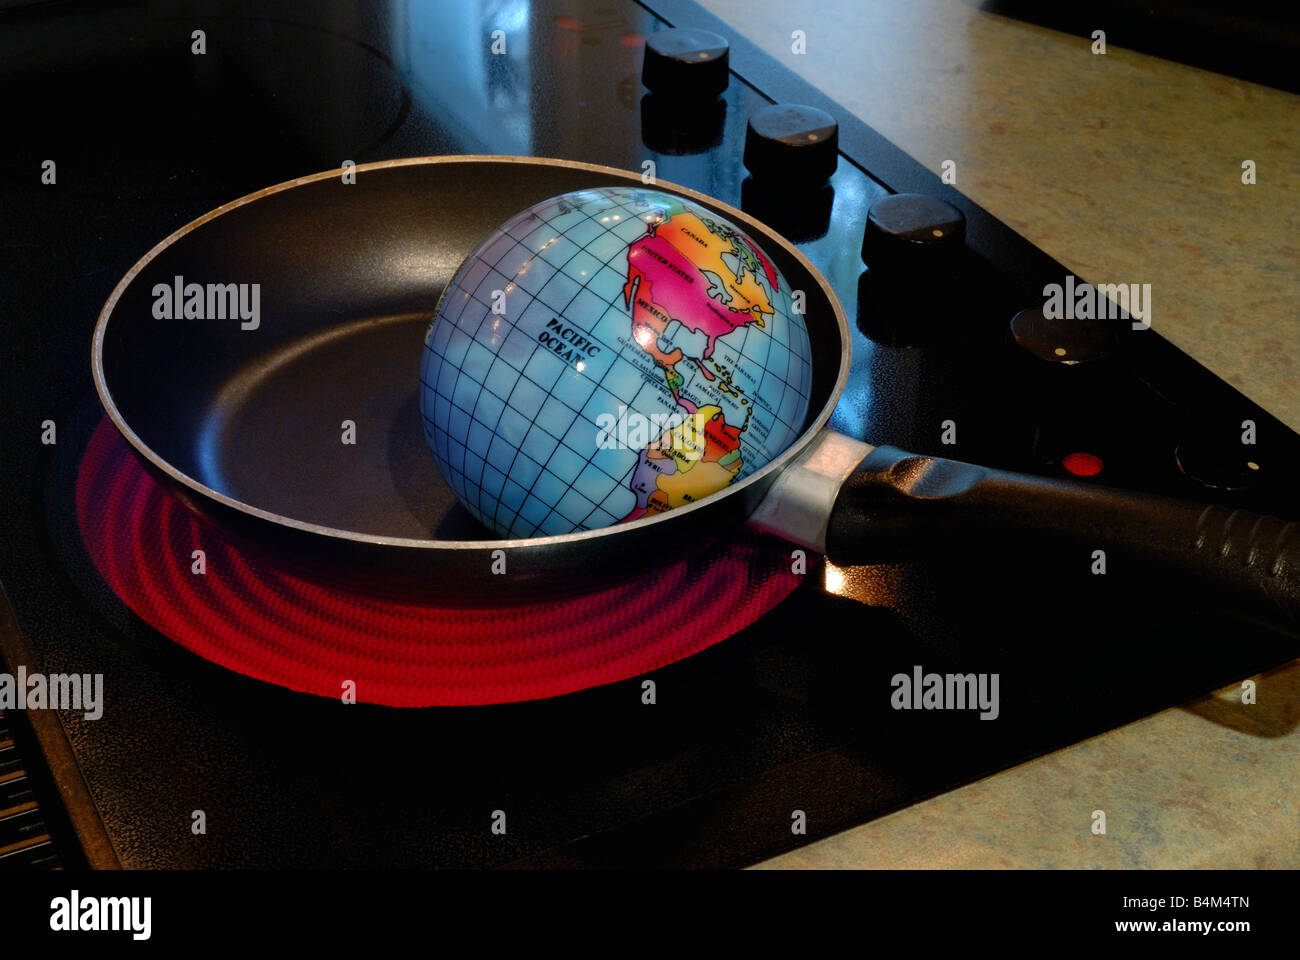 Un globe est illustré dans une poêle à frire sur un poêle chaud burner représentant le concept de réchauffement global Banque D'Images